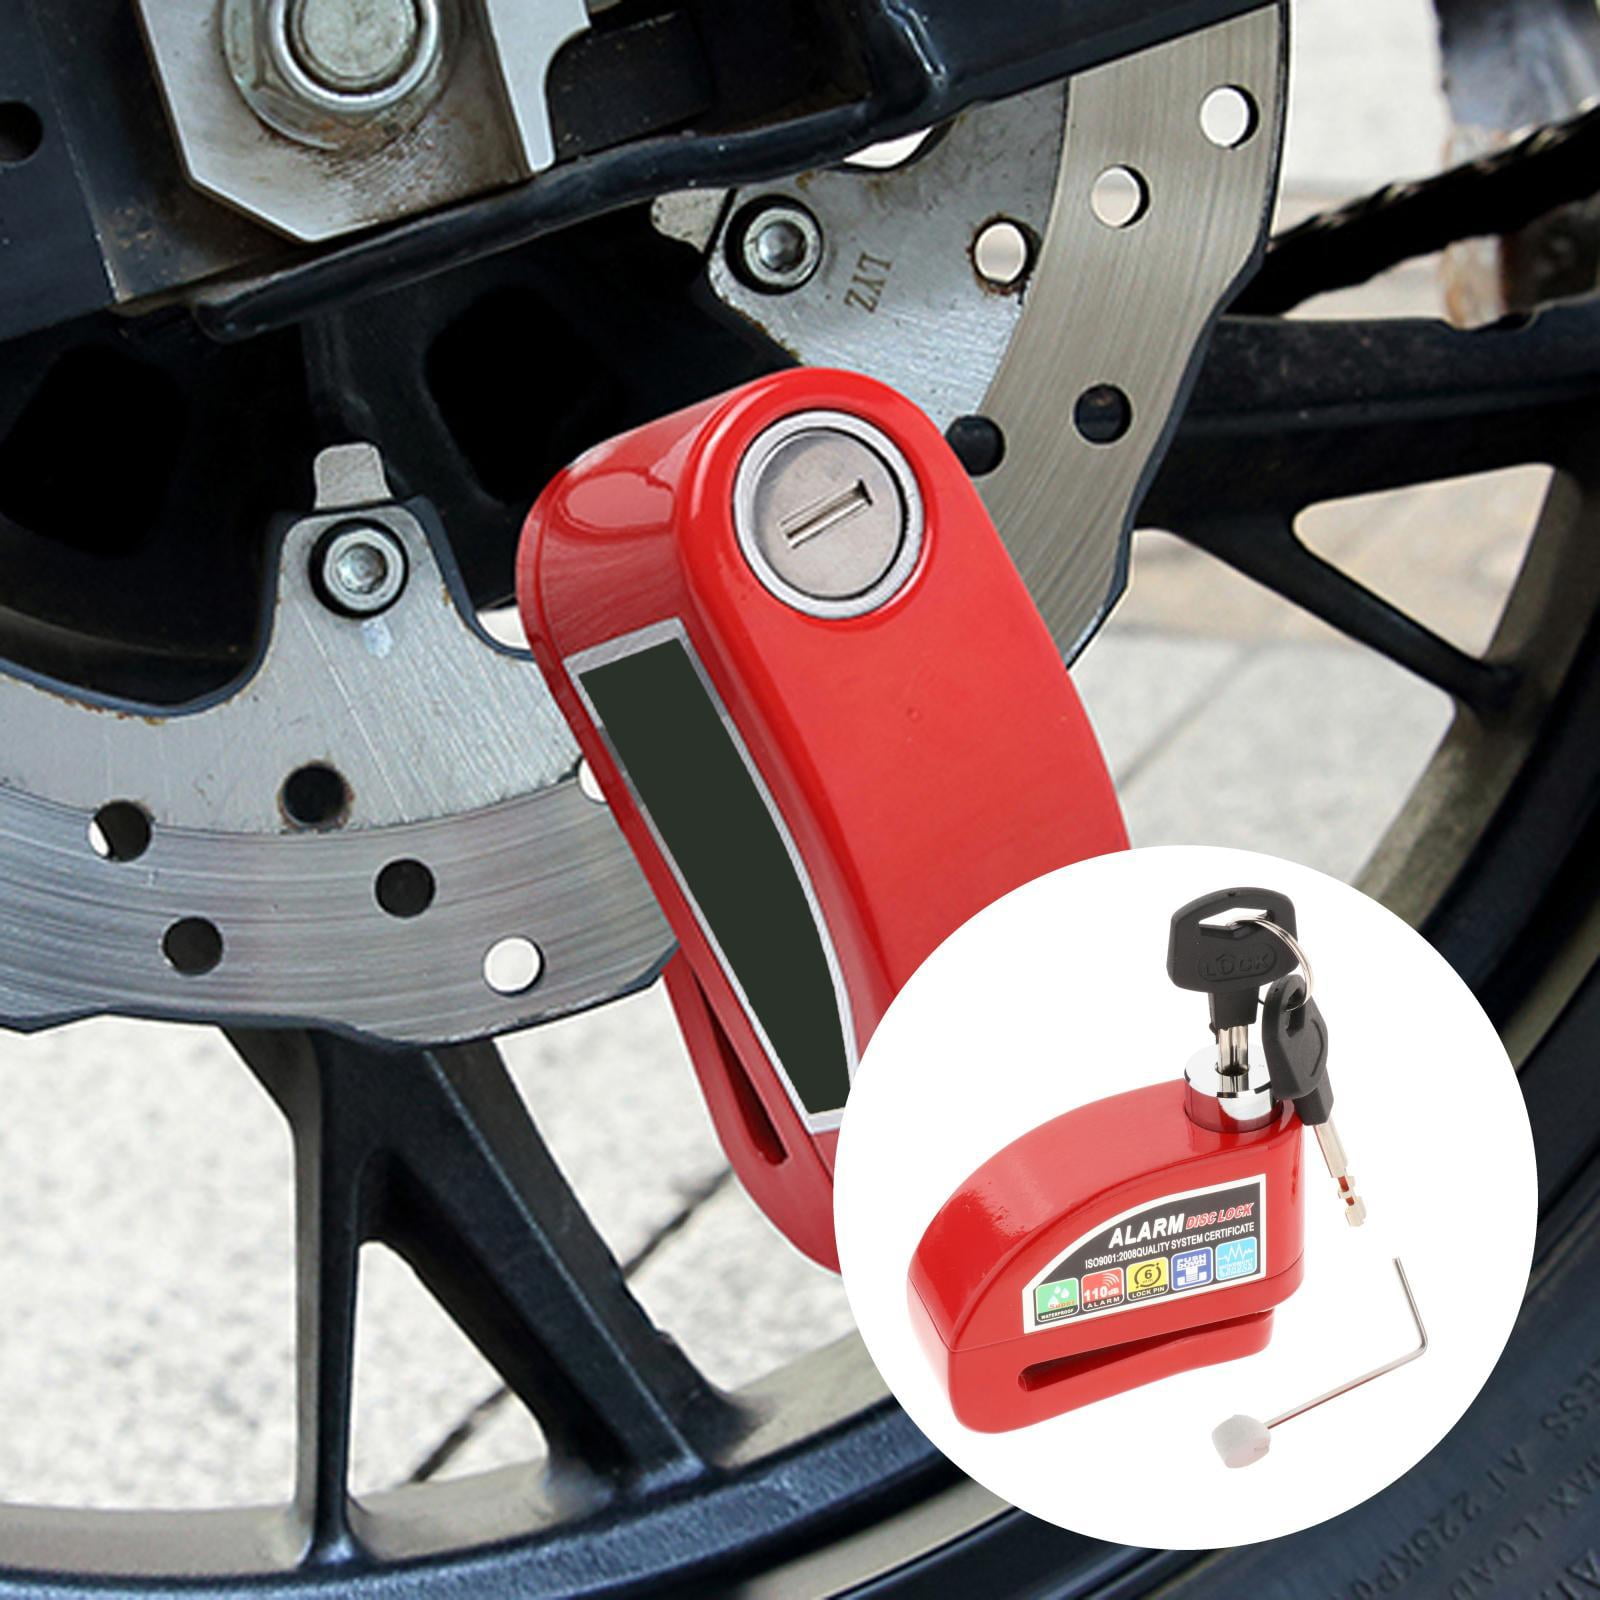 Motorcycle Bike Anti-theft Security Brake Disc Wheel Rotor Lock with 2 Keys Kit 